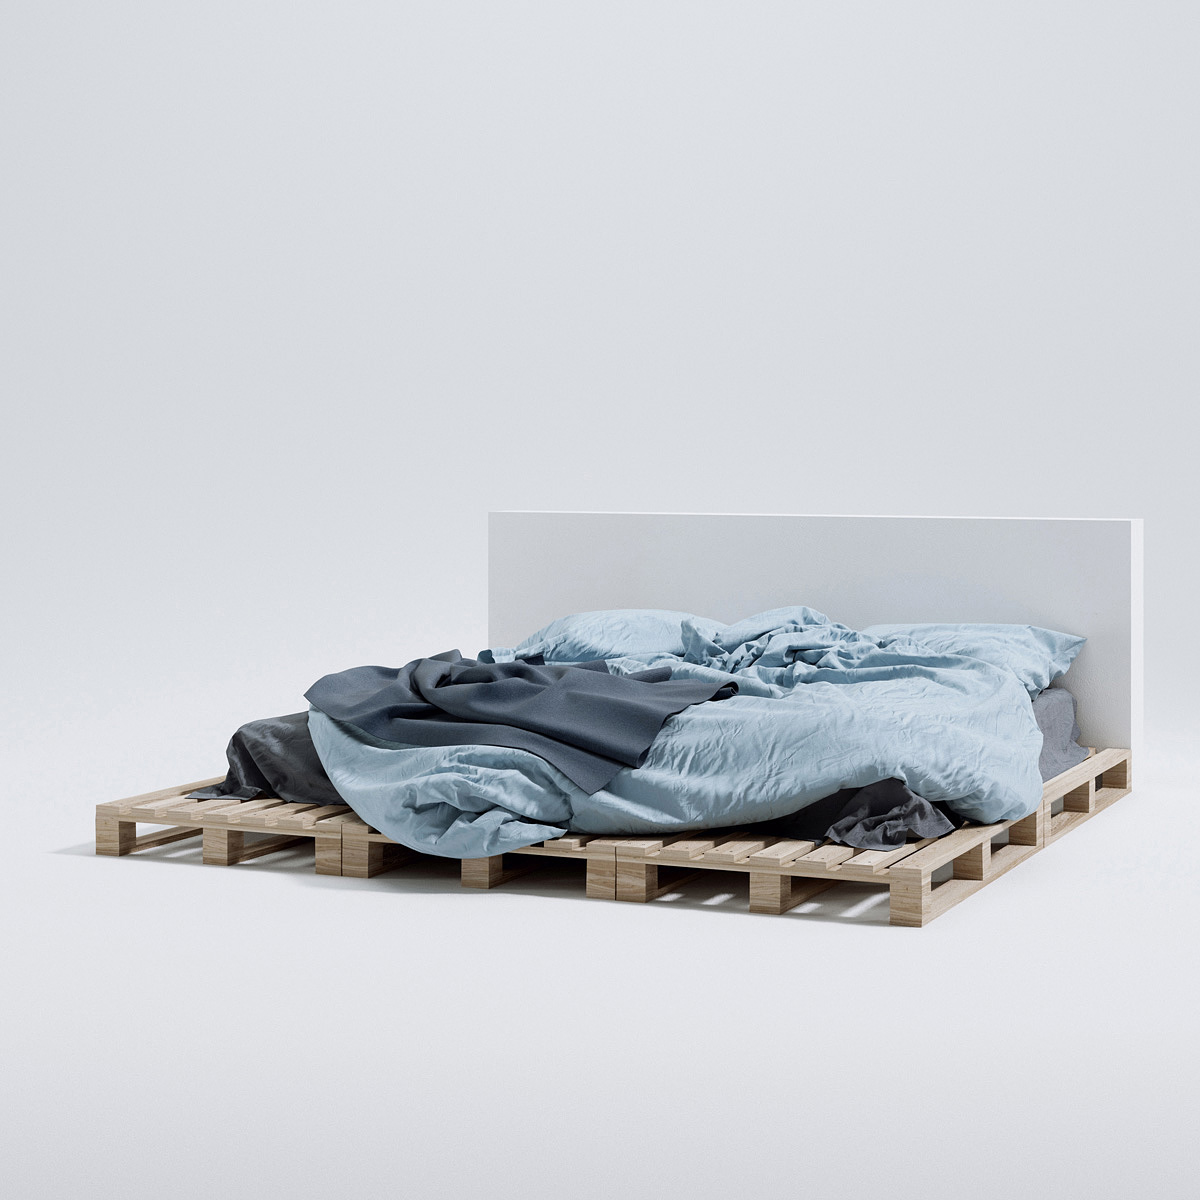 beds 3D 3D model 3d bed bedroom blanket Collection volumes catalog bed catalog